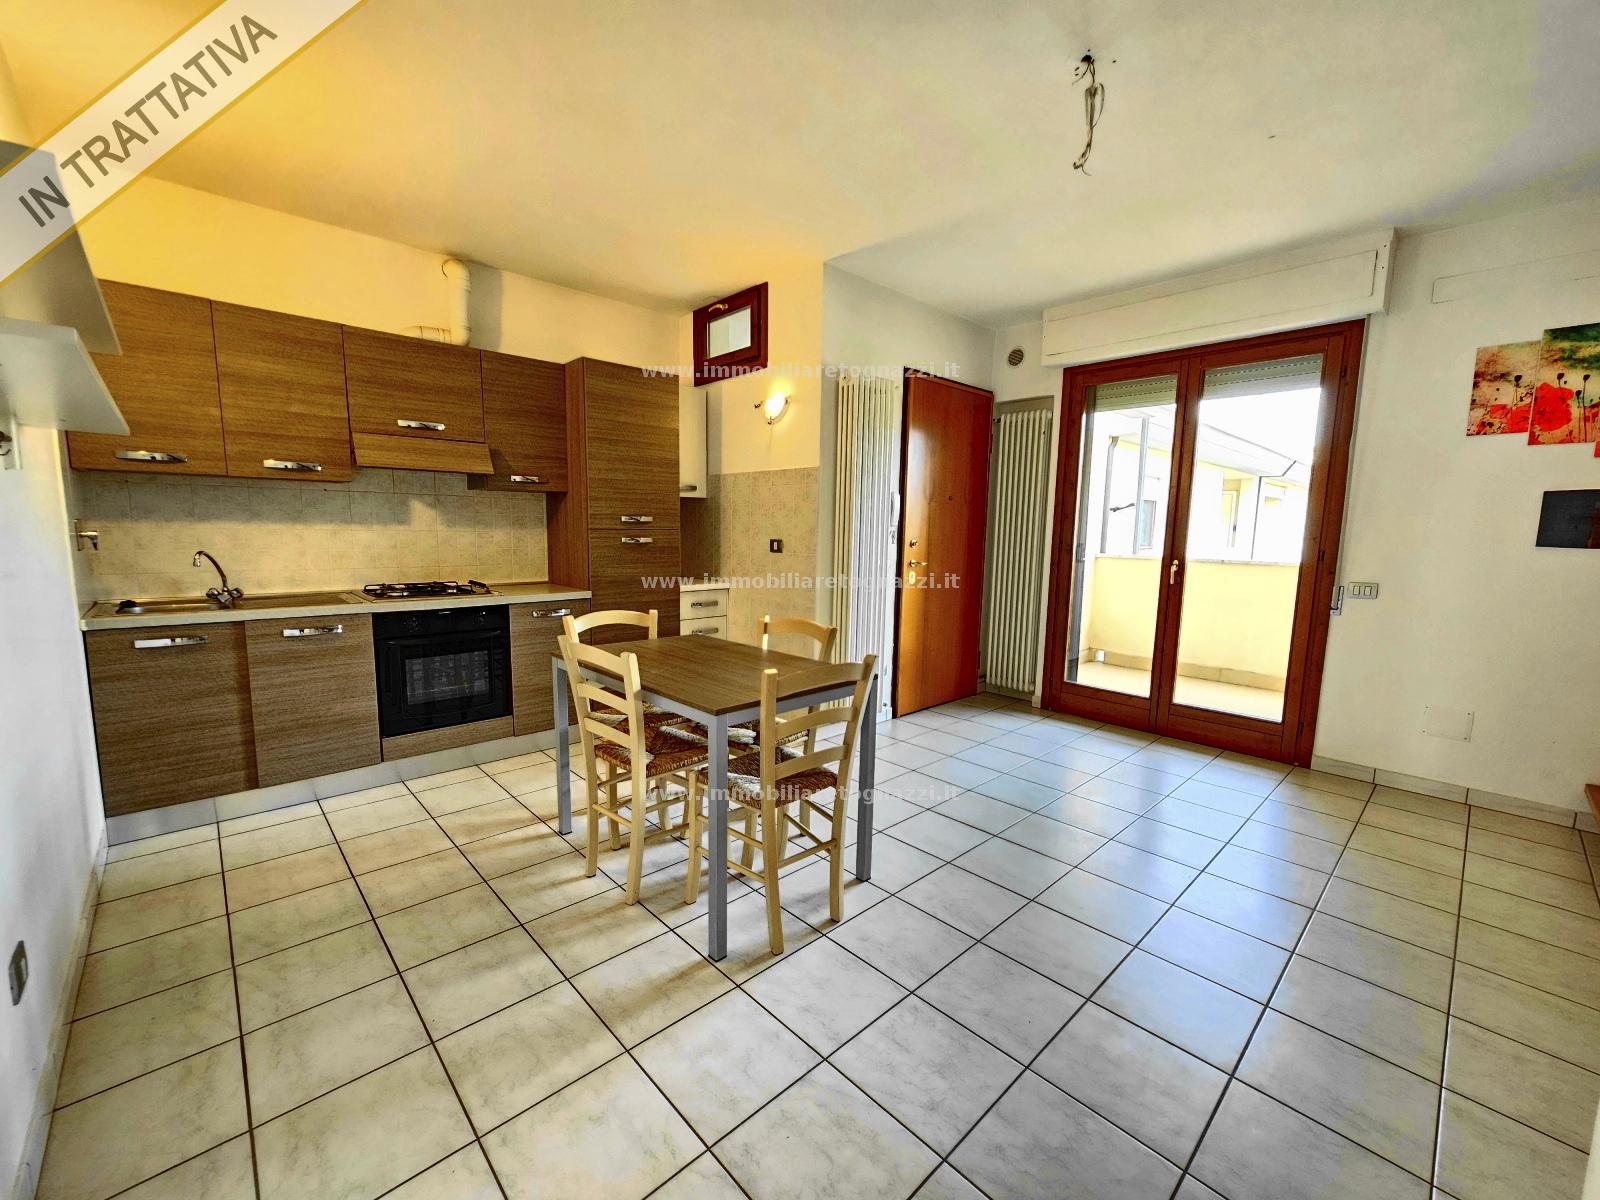 Appartamento in vendita a Certaldo, 3 locali, prezzo € 149.000 | PortaleAgenzieImmobiliari.it